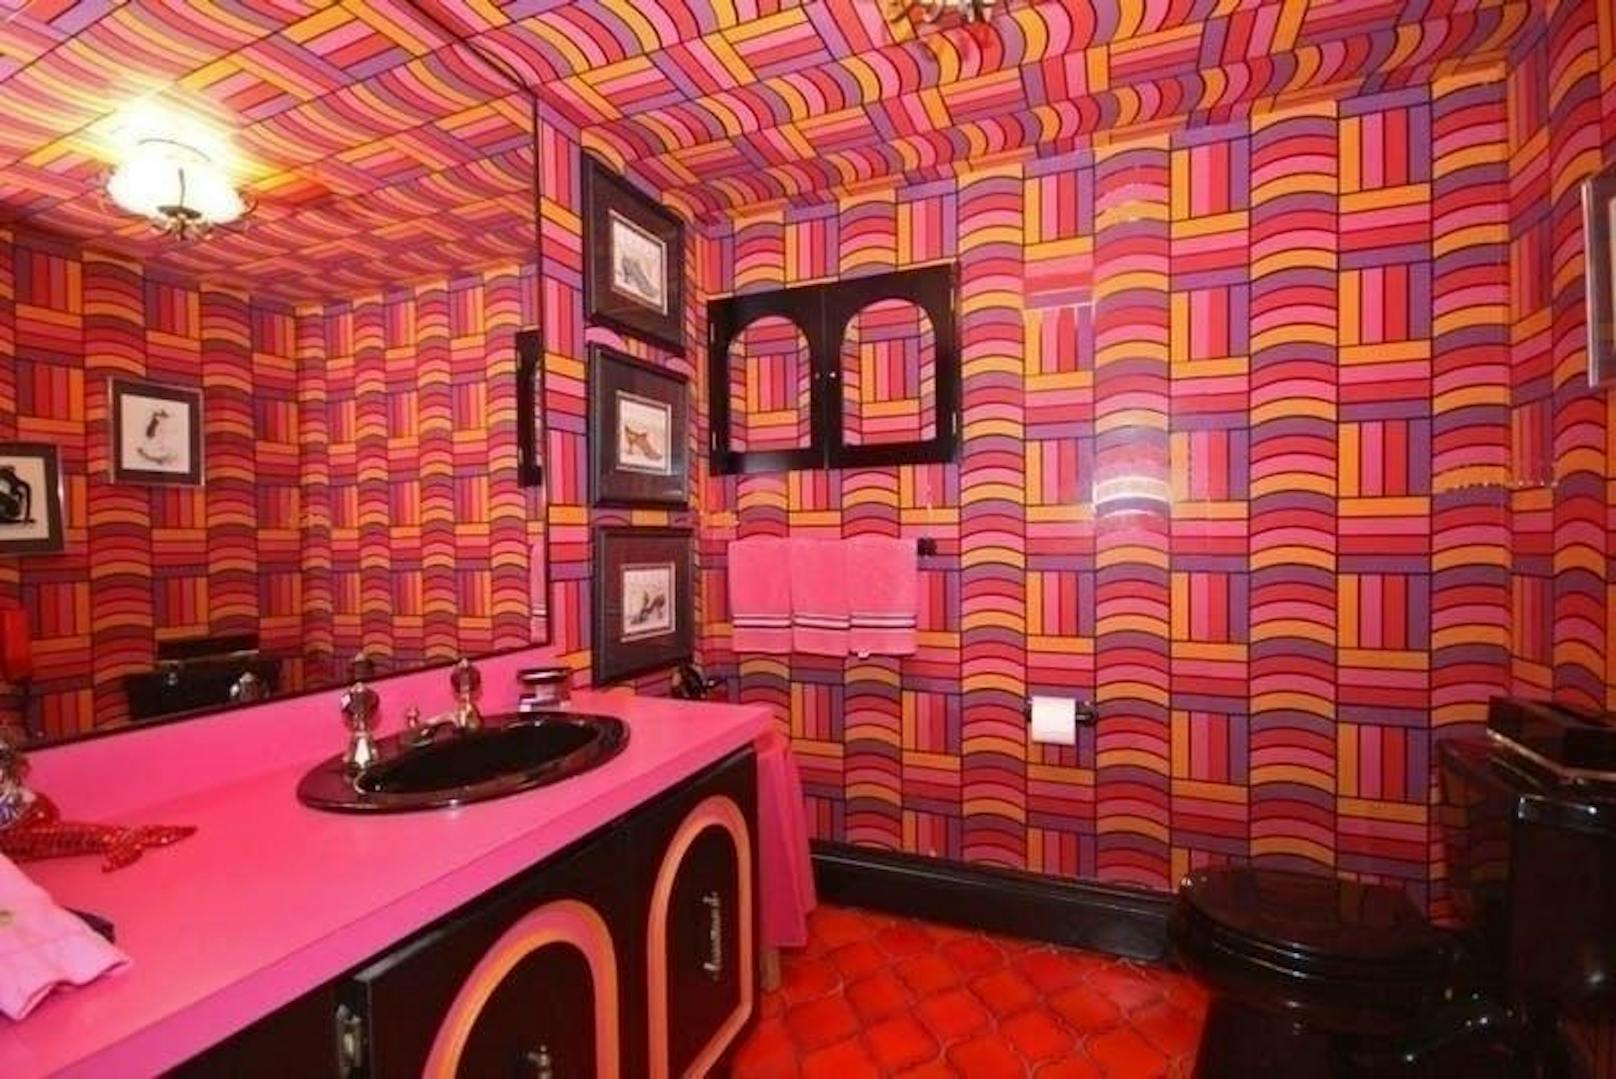 Der Erbauer des Hauses, der es Anfang der Siebziger ganz nach seinem Geschmack einrichtete, hatte offensichtlich keine Angst vor Farben und Mustern. Dieses Badezimmer ist wohl nicht für jedermann.